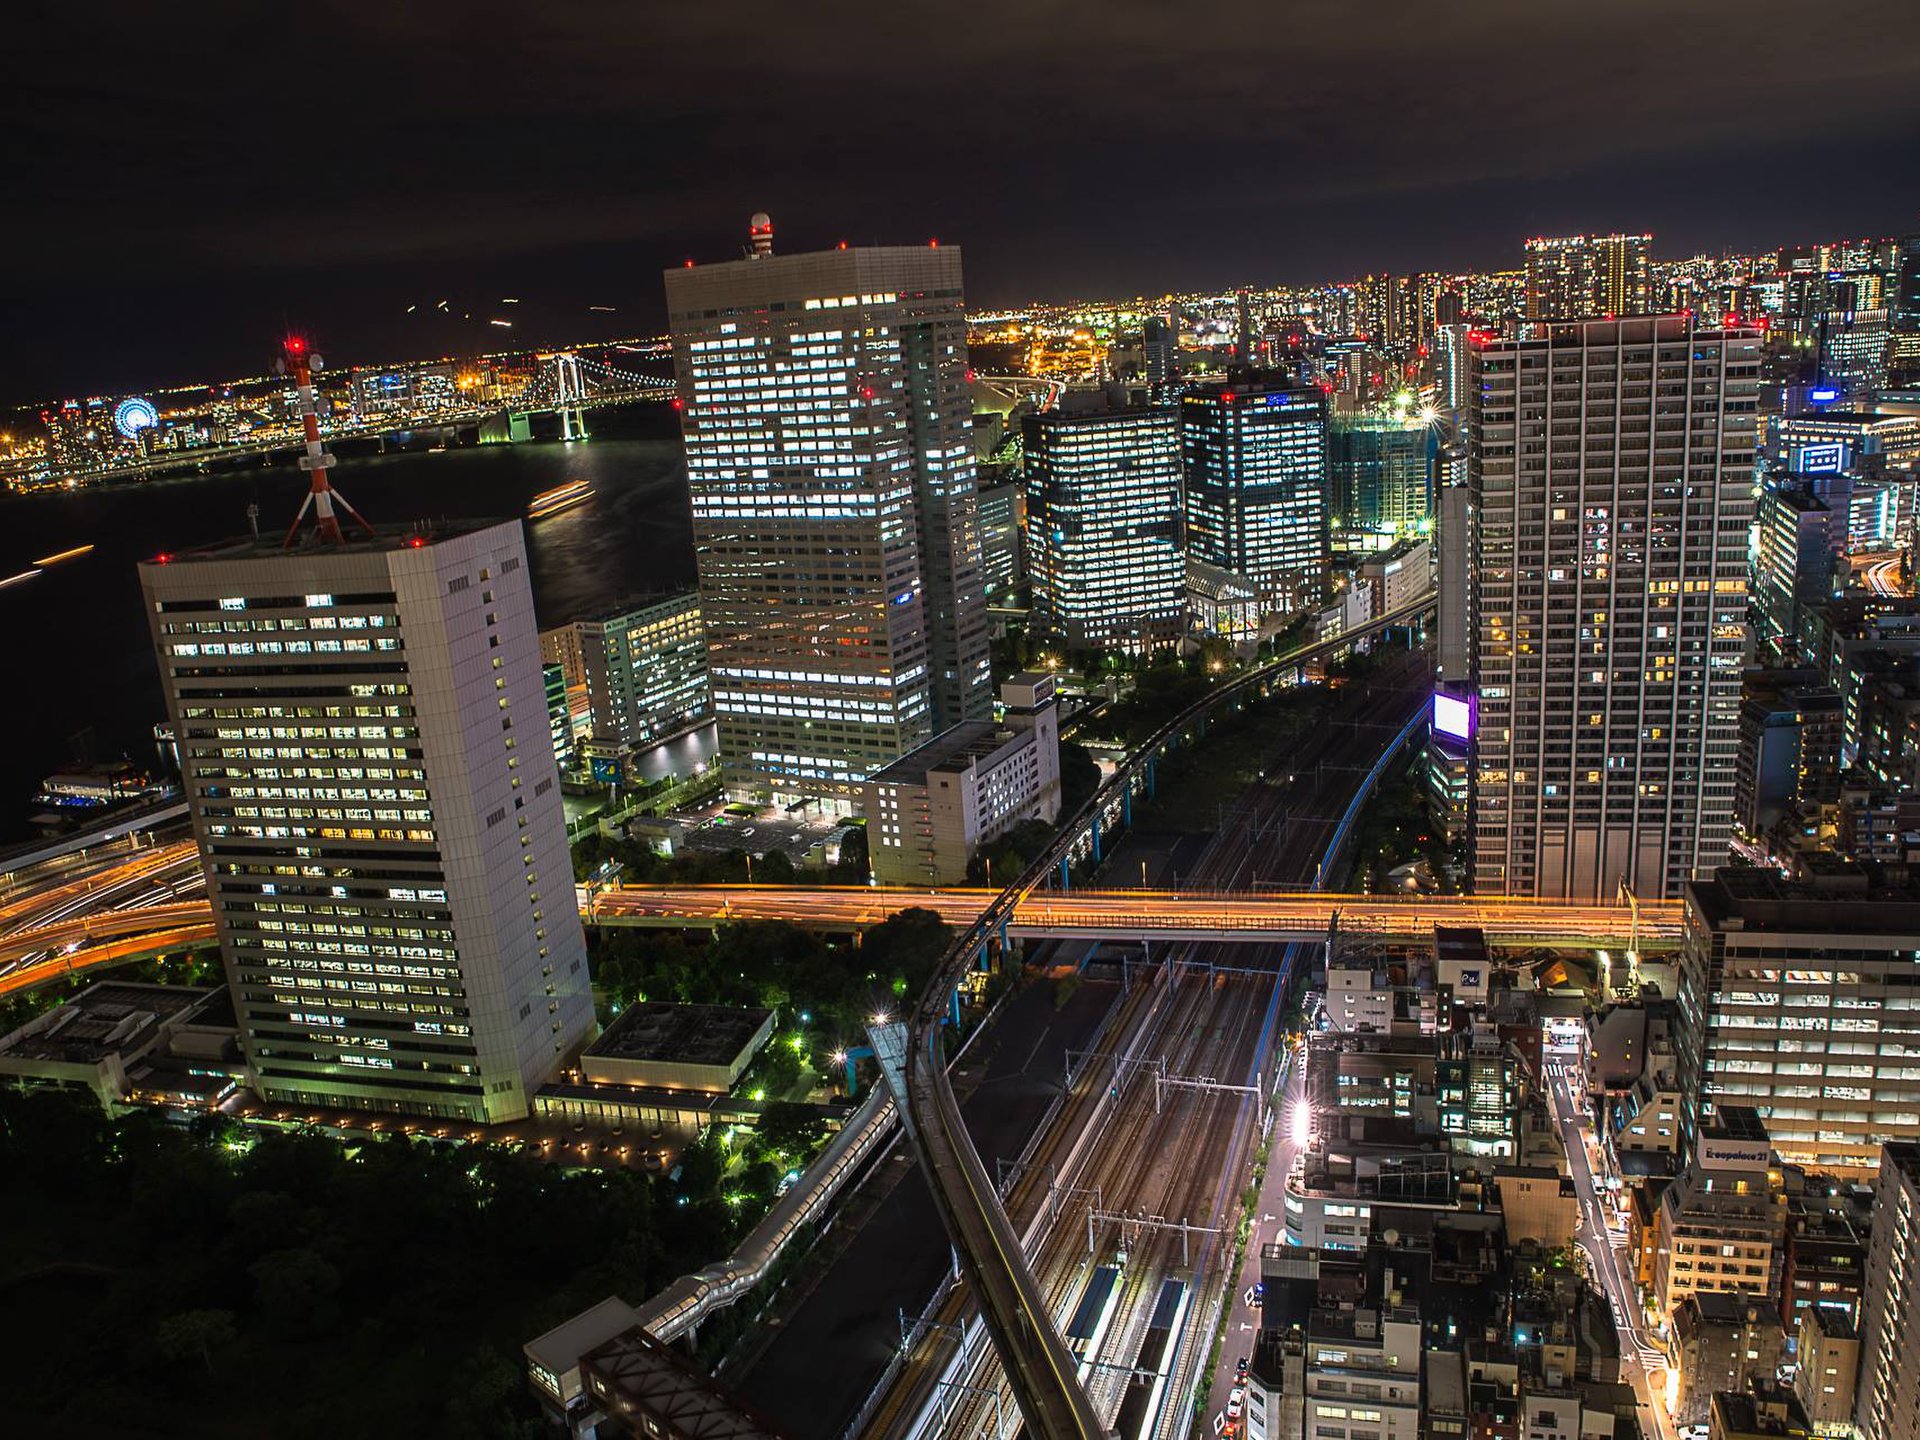 カメラマンさん激推しの東京夜景スポット「世界貿易センタービル展望台」大門、浜松町ついでに♪